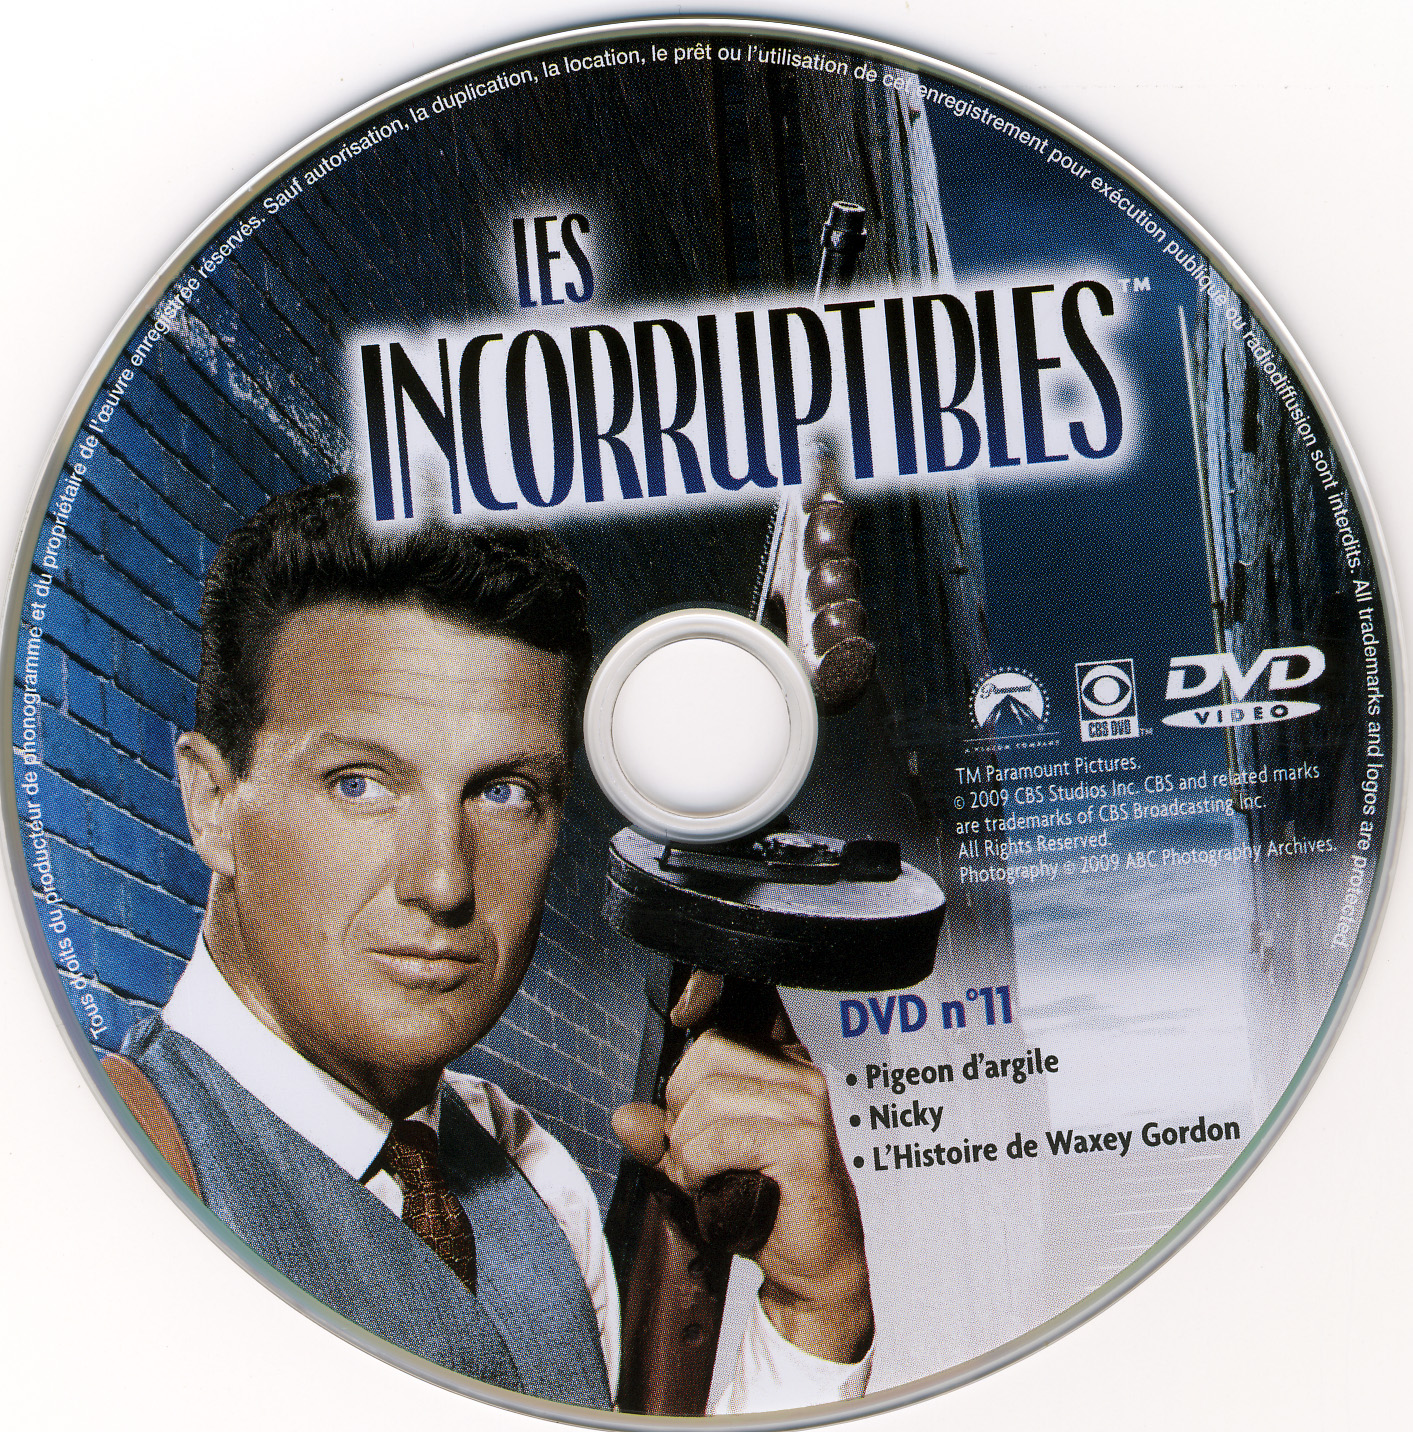 Les incorruptibles intgrale DVD 11